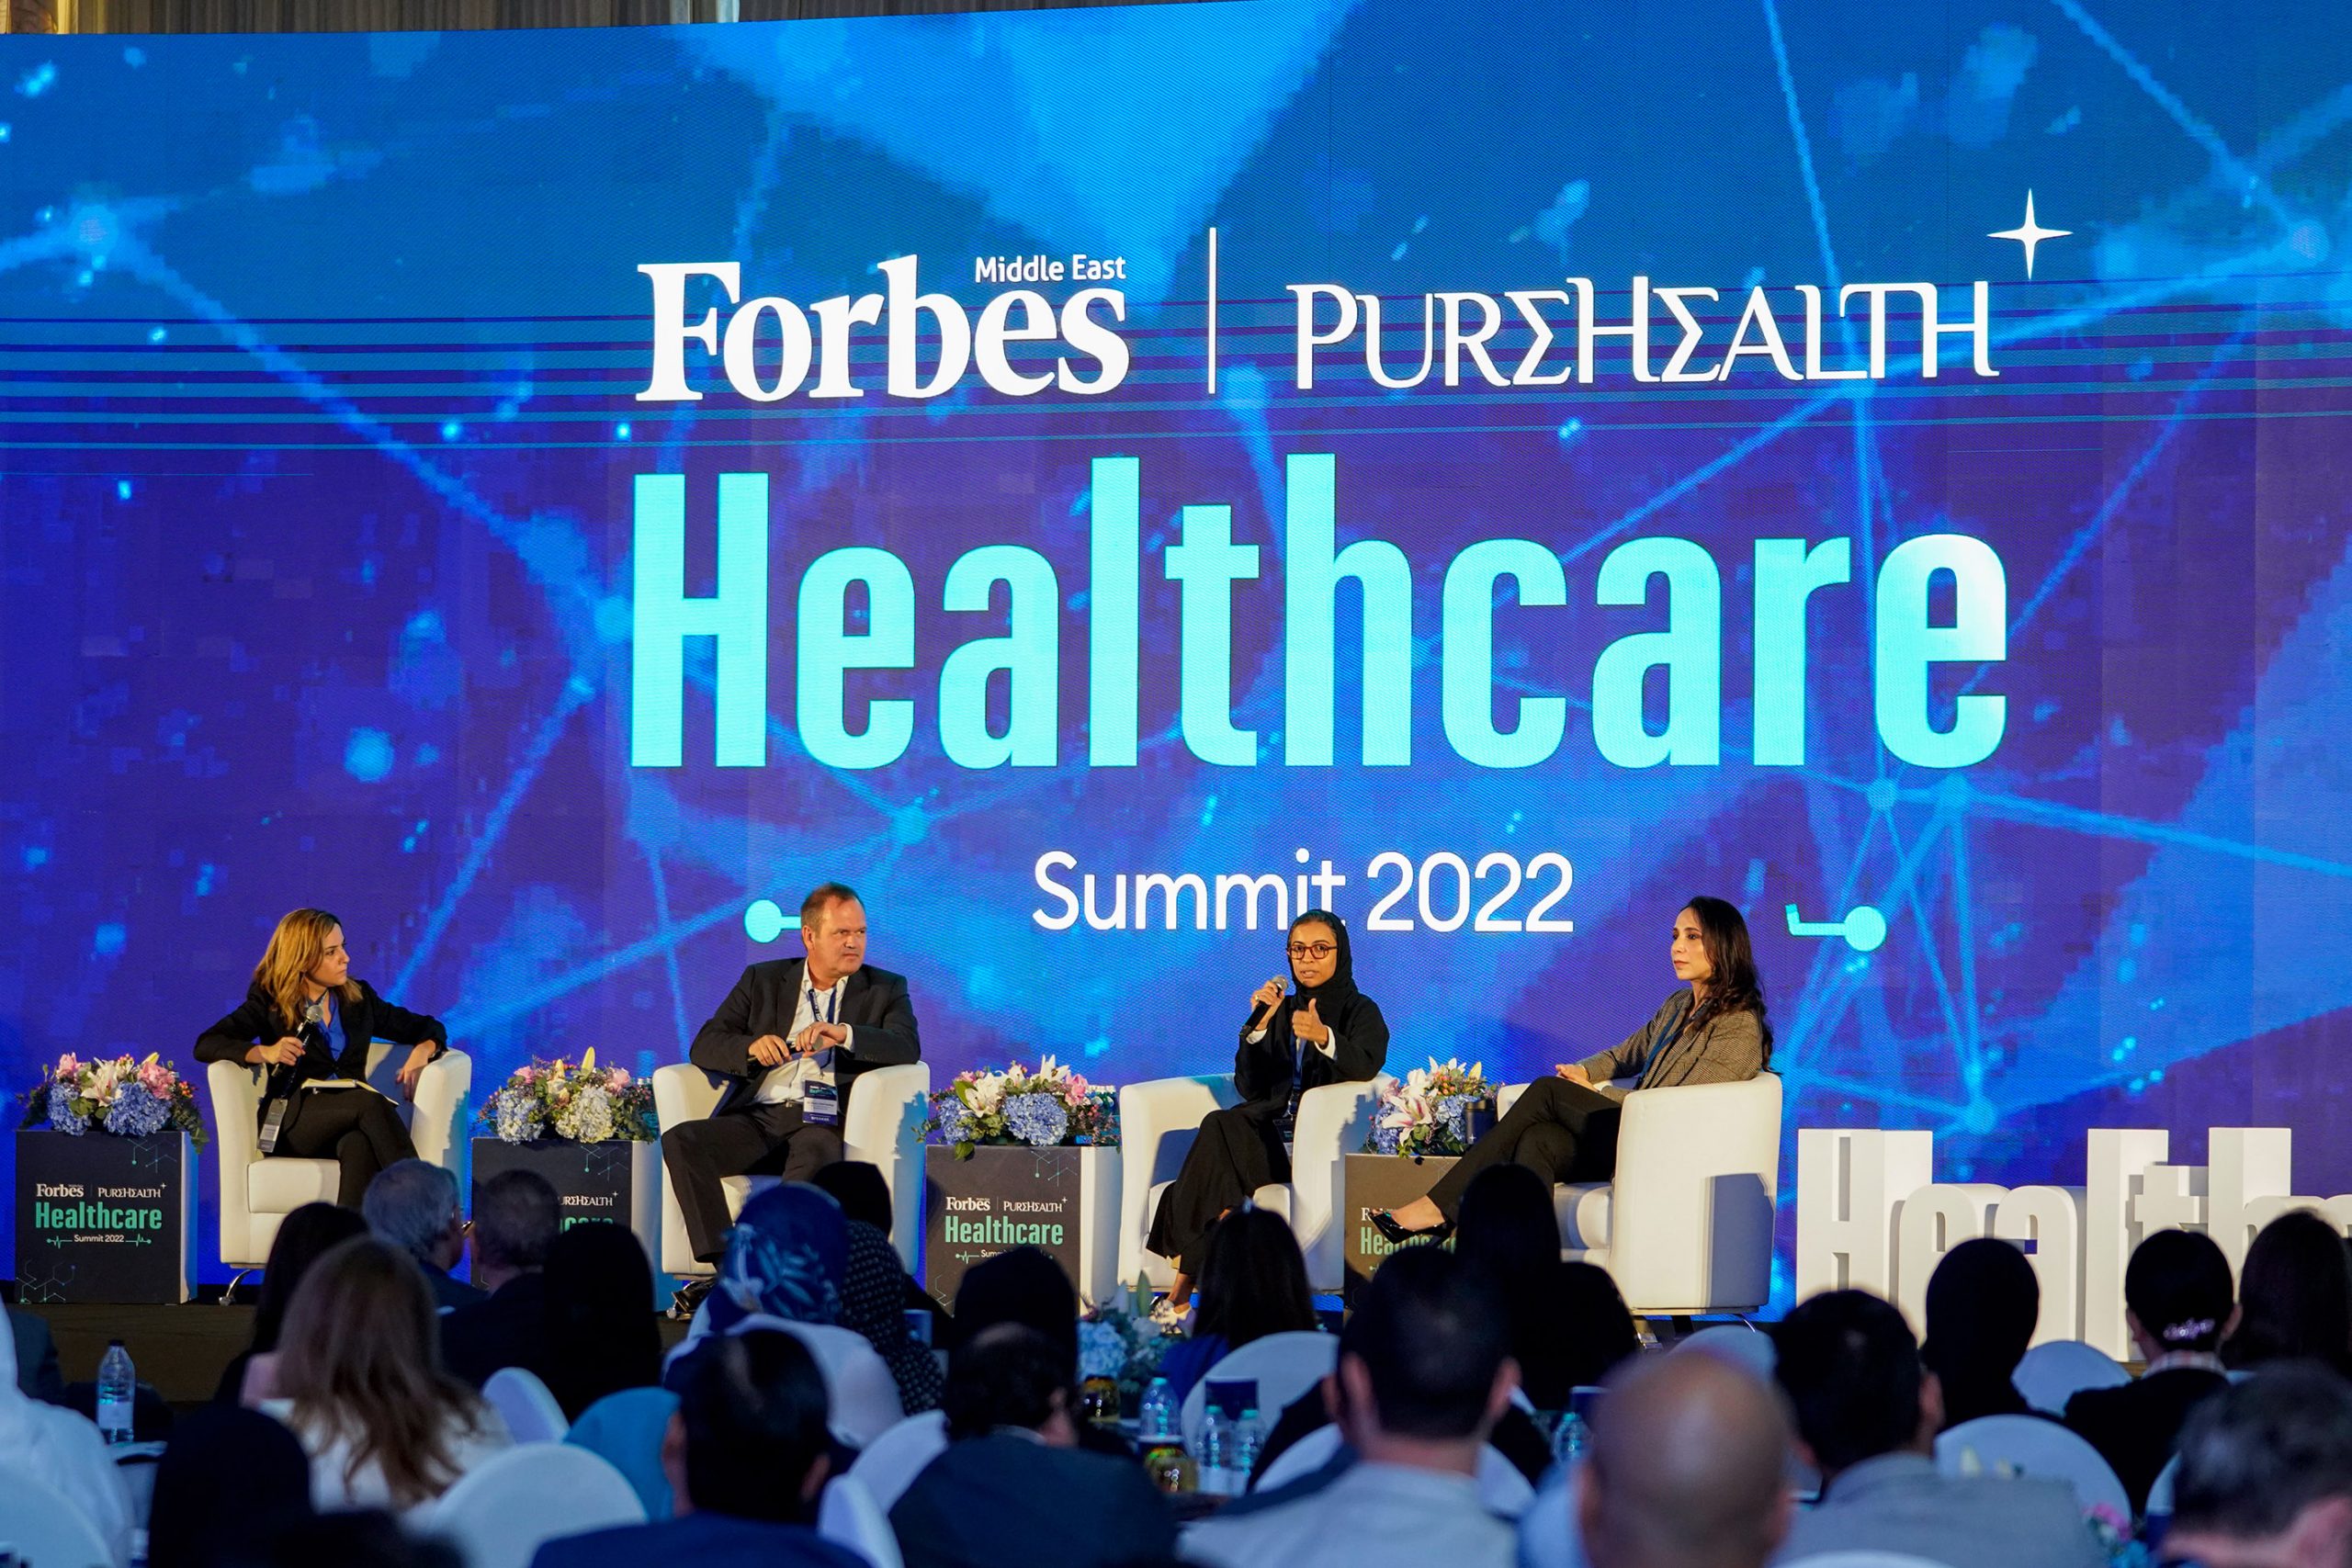 قادة الرعاية الصحية يستكشفون مستقبل القطاع في قمة فوربس الشرق الأوسط للرعاية الصحية 2022